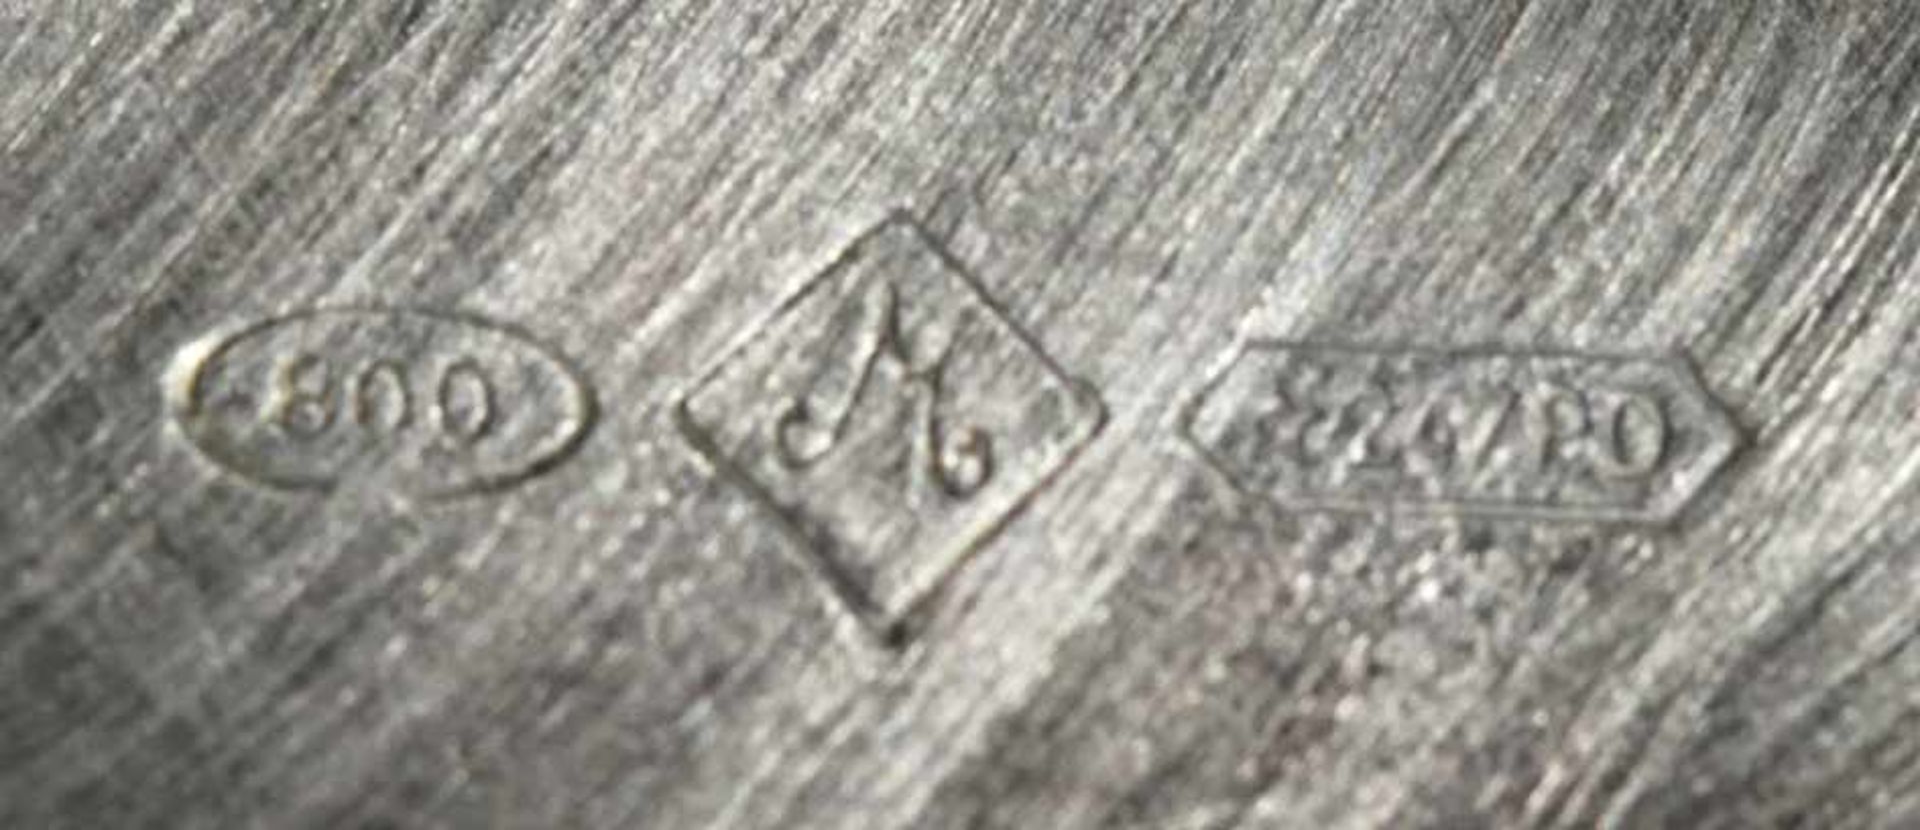 Sektkühler, Südeuropa, 2. Hälfte 20. Jh., Silber 800, zylindrische Form, seitlich 2Trageknäufe, - Bild 2 aus 2